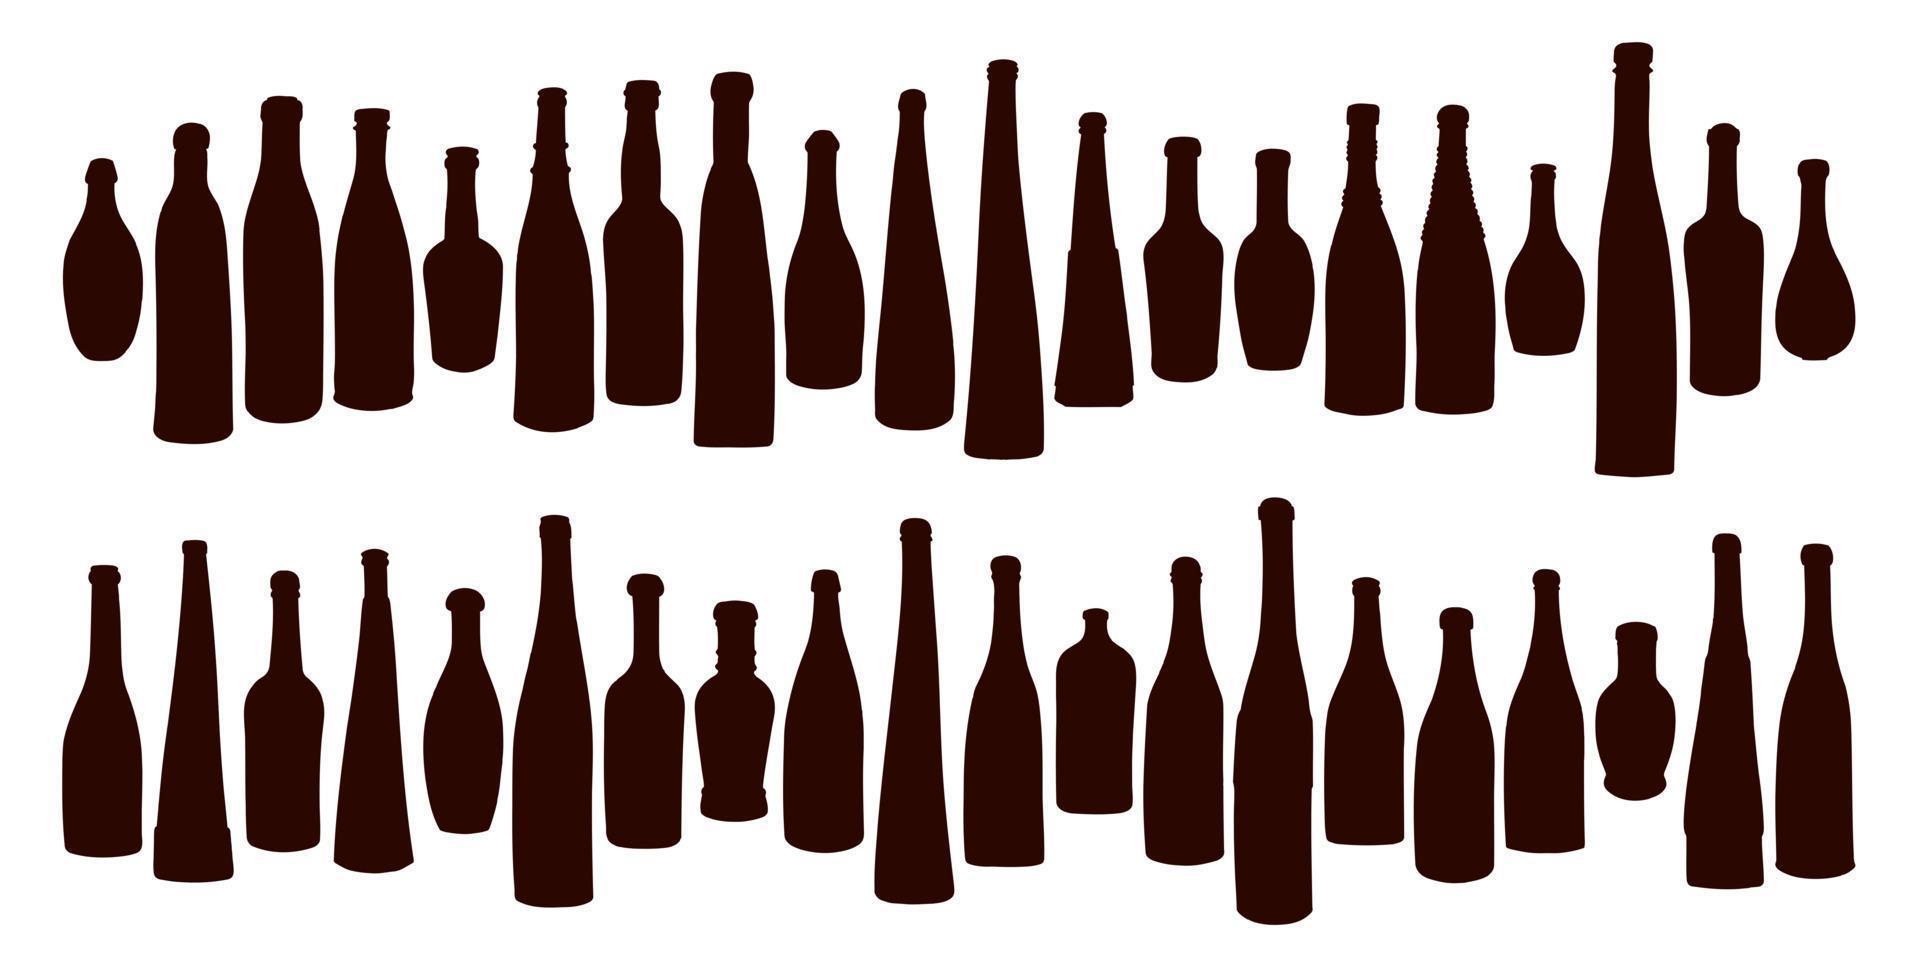 form der silhouette der flasche für alkohol, bier, kwas, wasser. Umriss eines Behälters zur Aufbewahrung von Flüssigkeit vektor